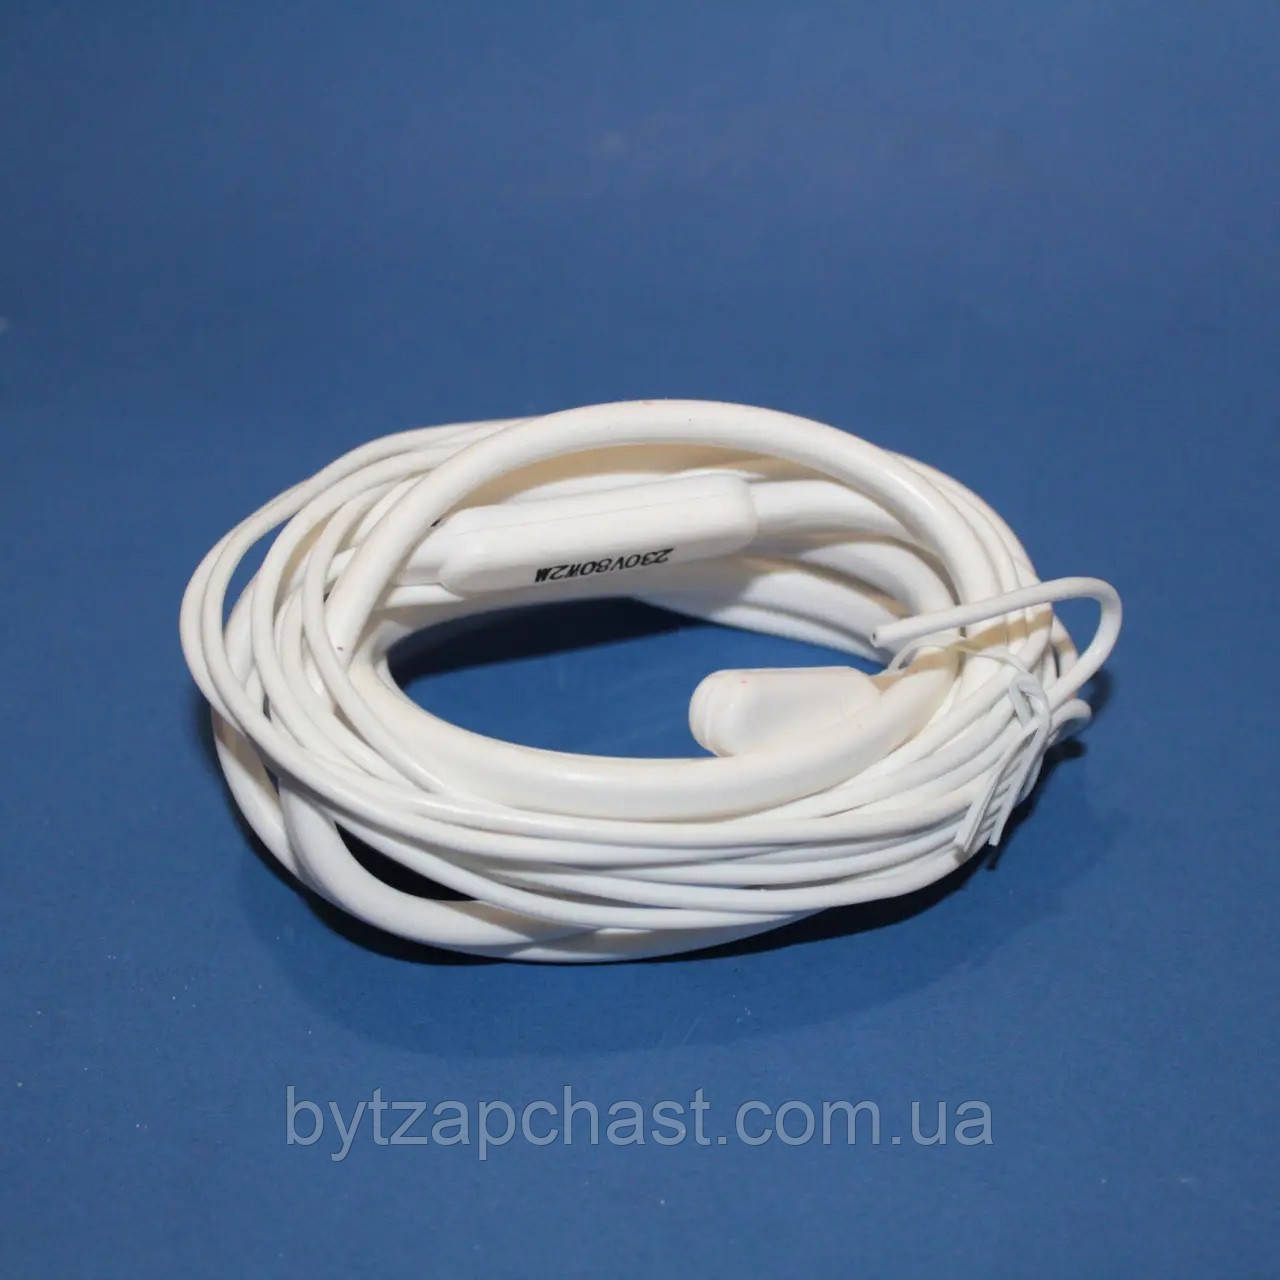 ТЕН гнучкий дренажний 1 м (...W, 220V), гріючий кабель